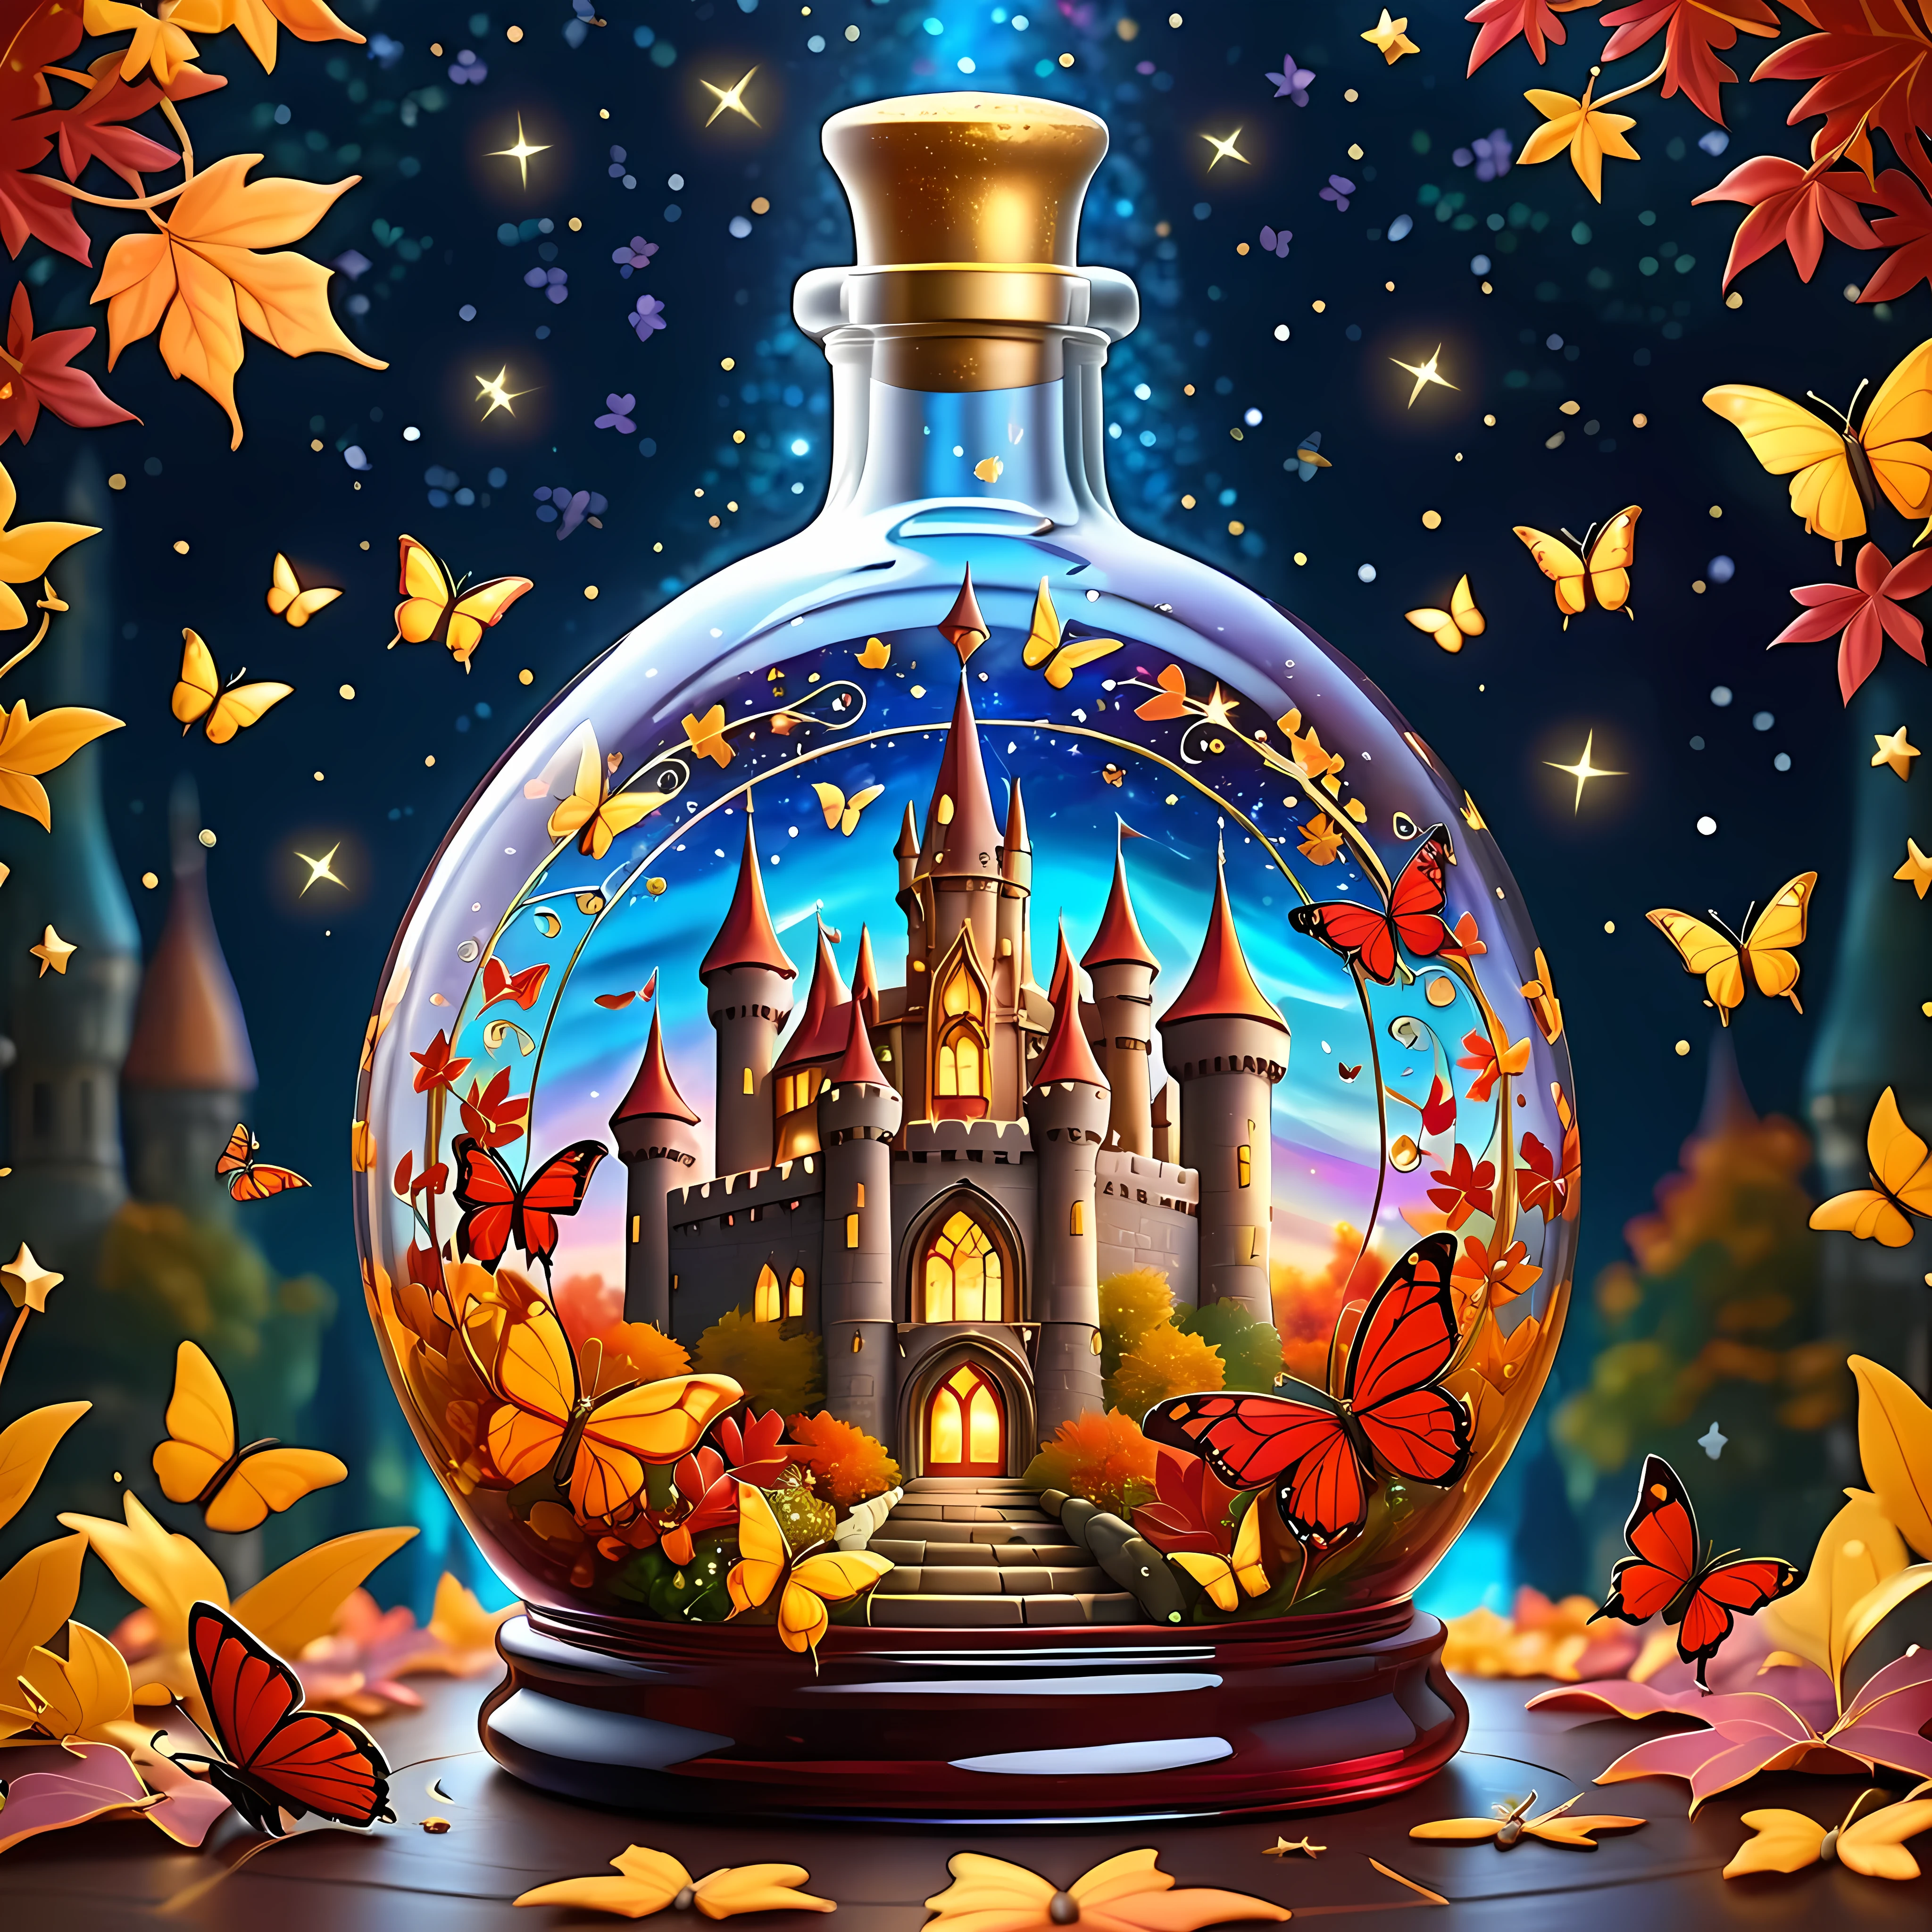 Яркий мультфильм, Волшебный осенний яркий замок деликатно поместите в широкую богато украшенную стеклянную бутылку., окружен огромным космосом мерцающих звезд и вращающихся галактик, золотые и малиновые листья внутри бутылки, и потрясающие бабочки, Шедевр в максимальном разрешении 16К, Превосходное качество